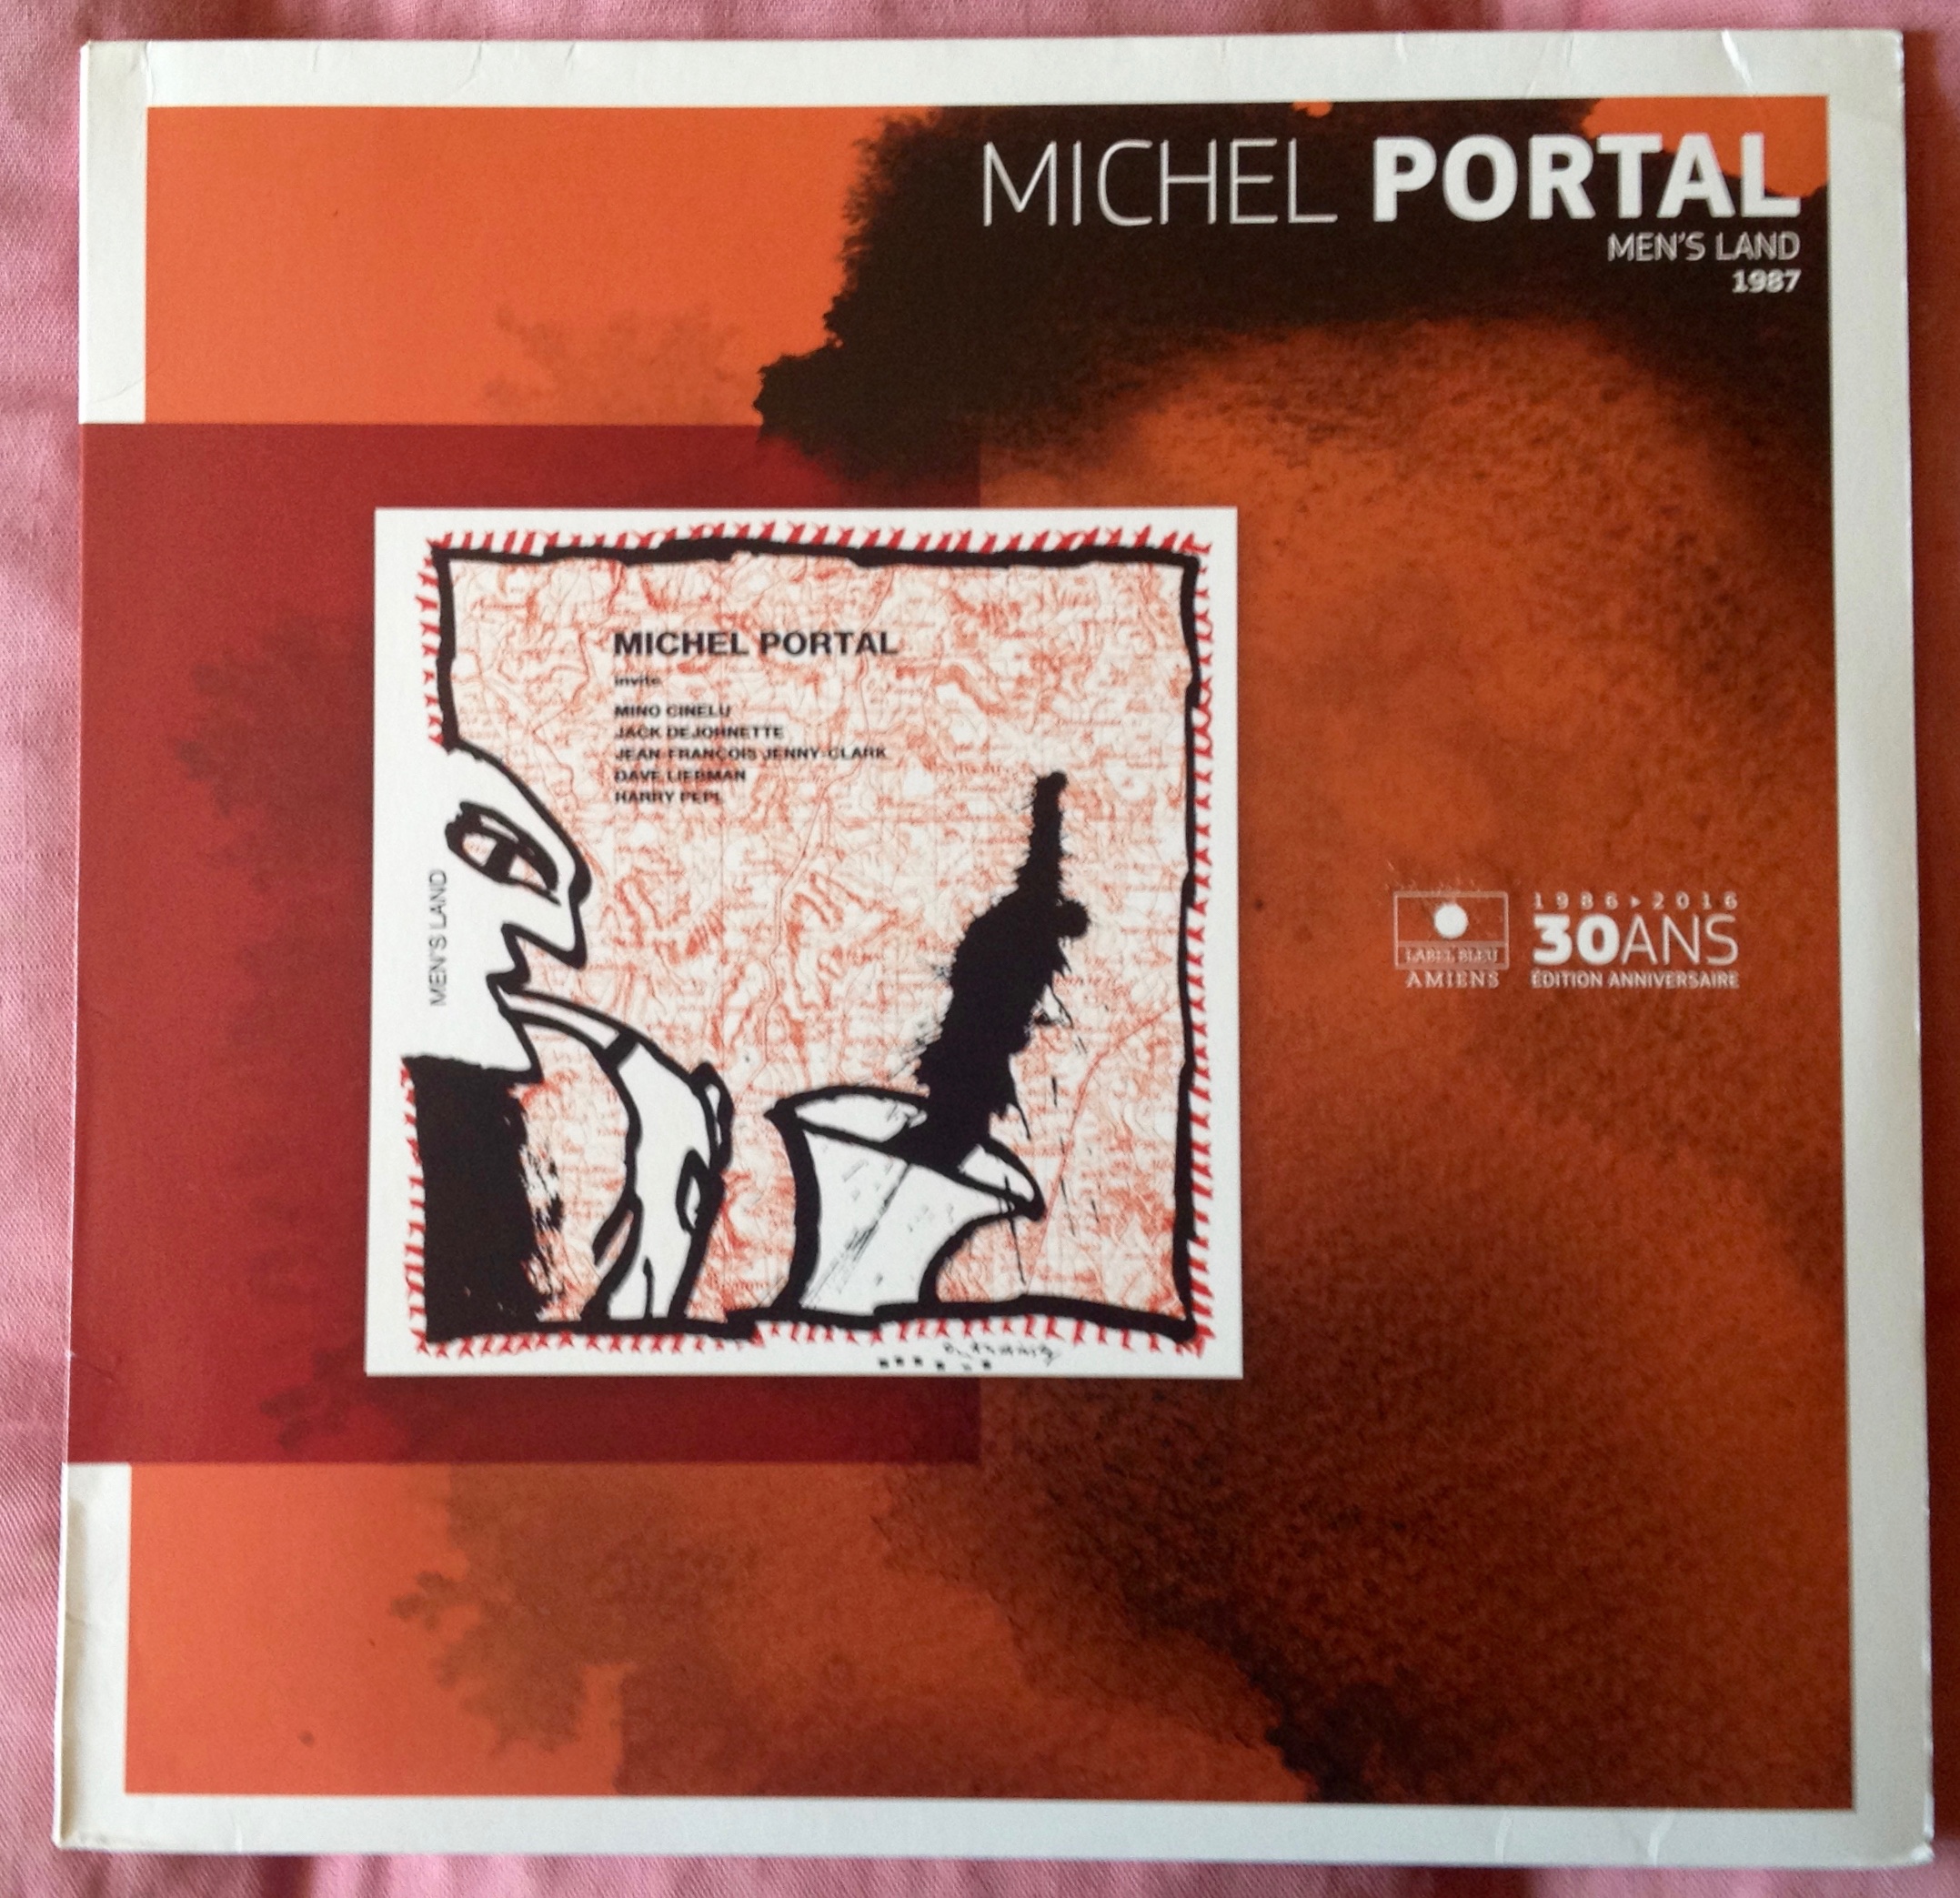 Deux facettes de Michel Portal.